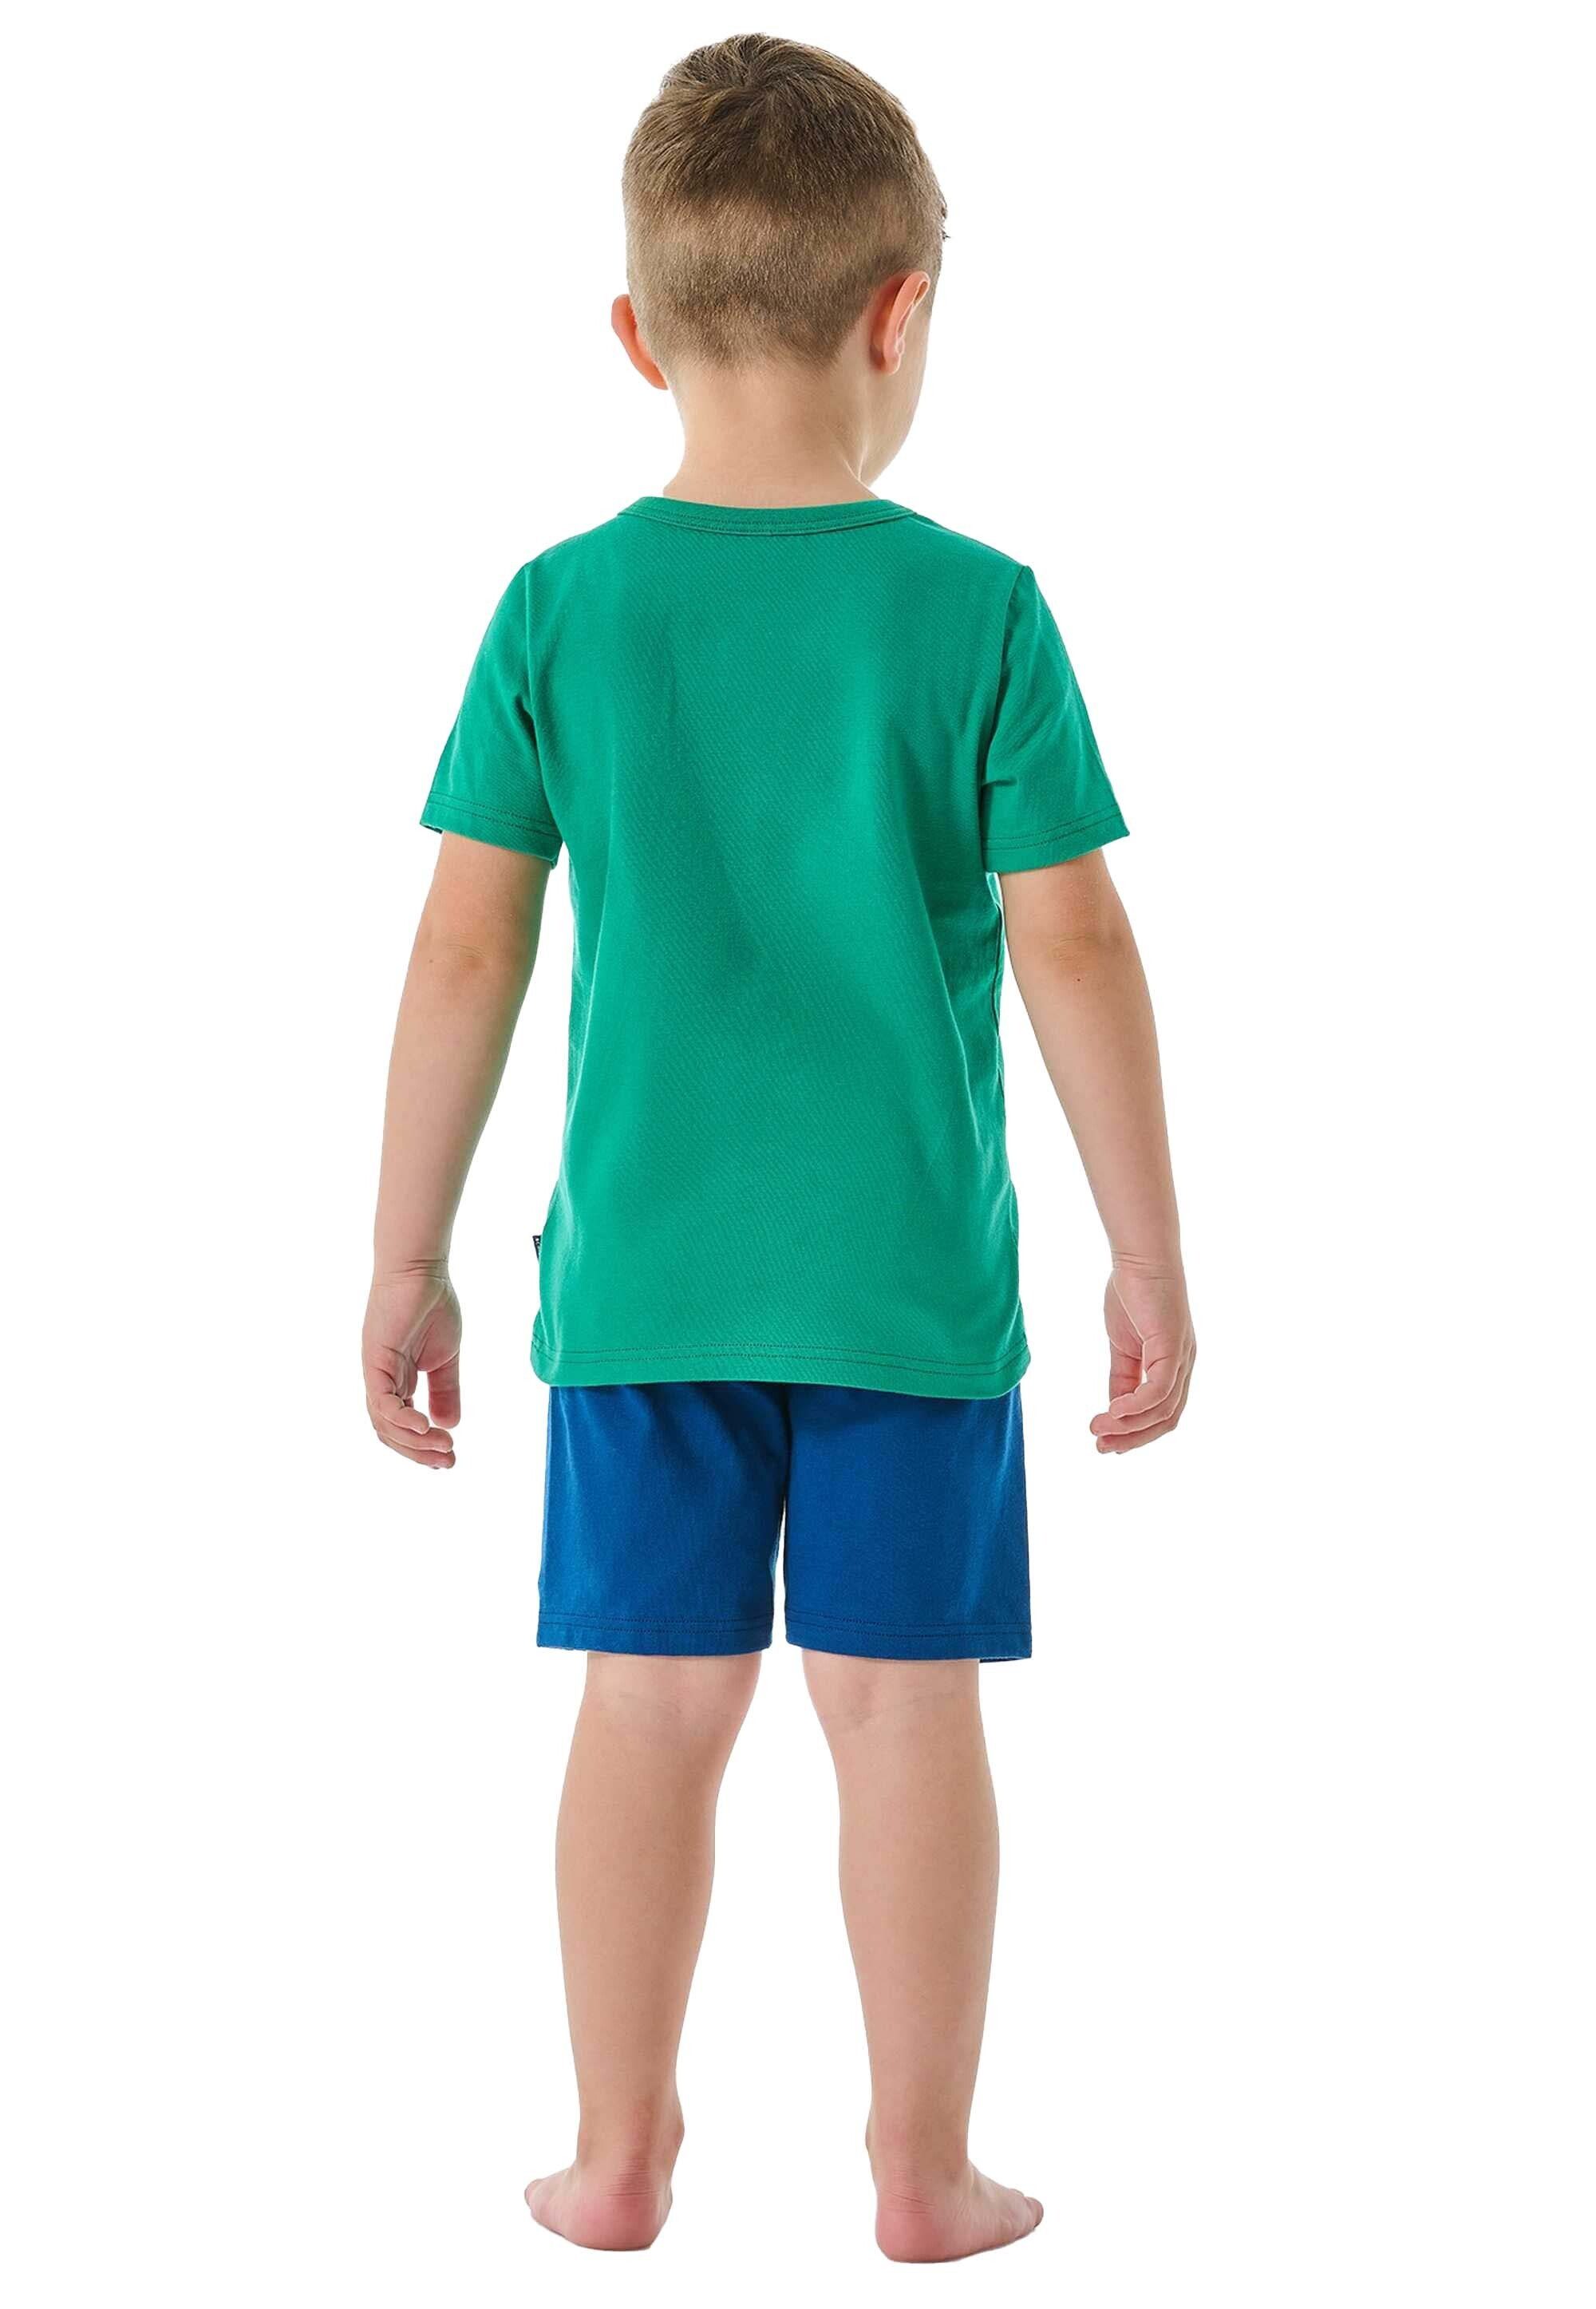 Schlafanzug Grün/Blau Jungen - Set Schiesser Pyjama Kinder kurz, 2-tlg.